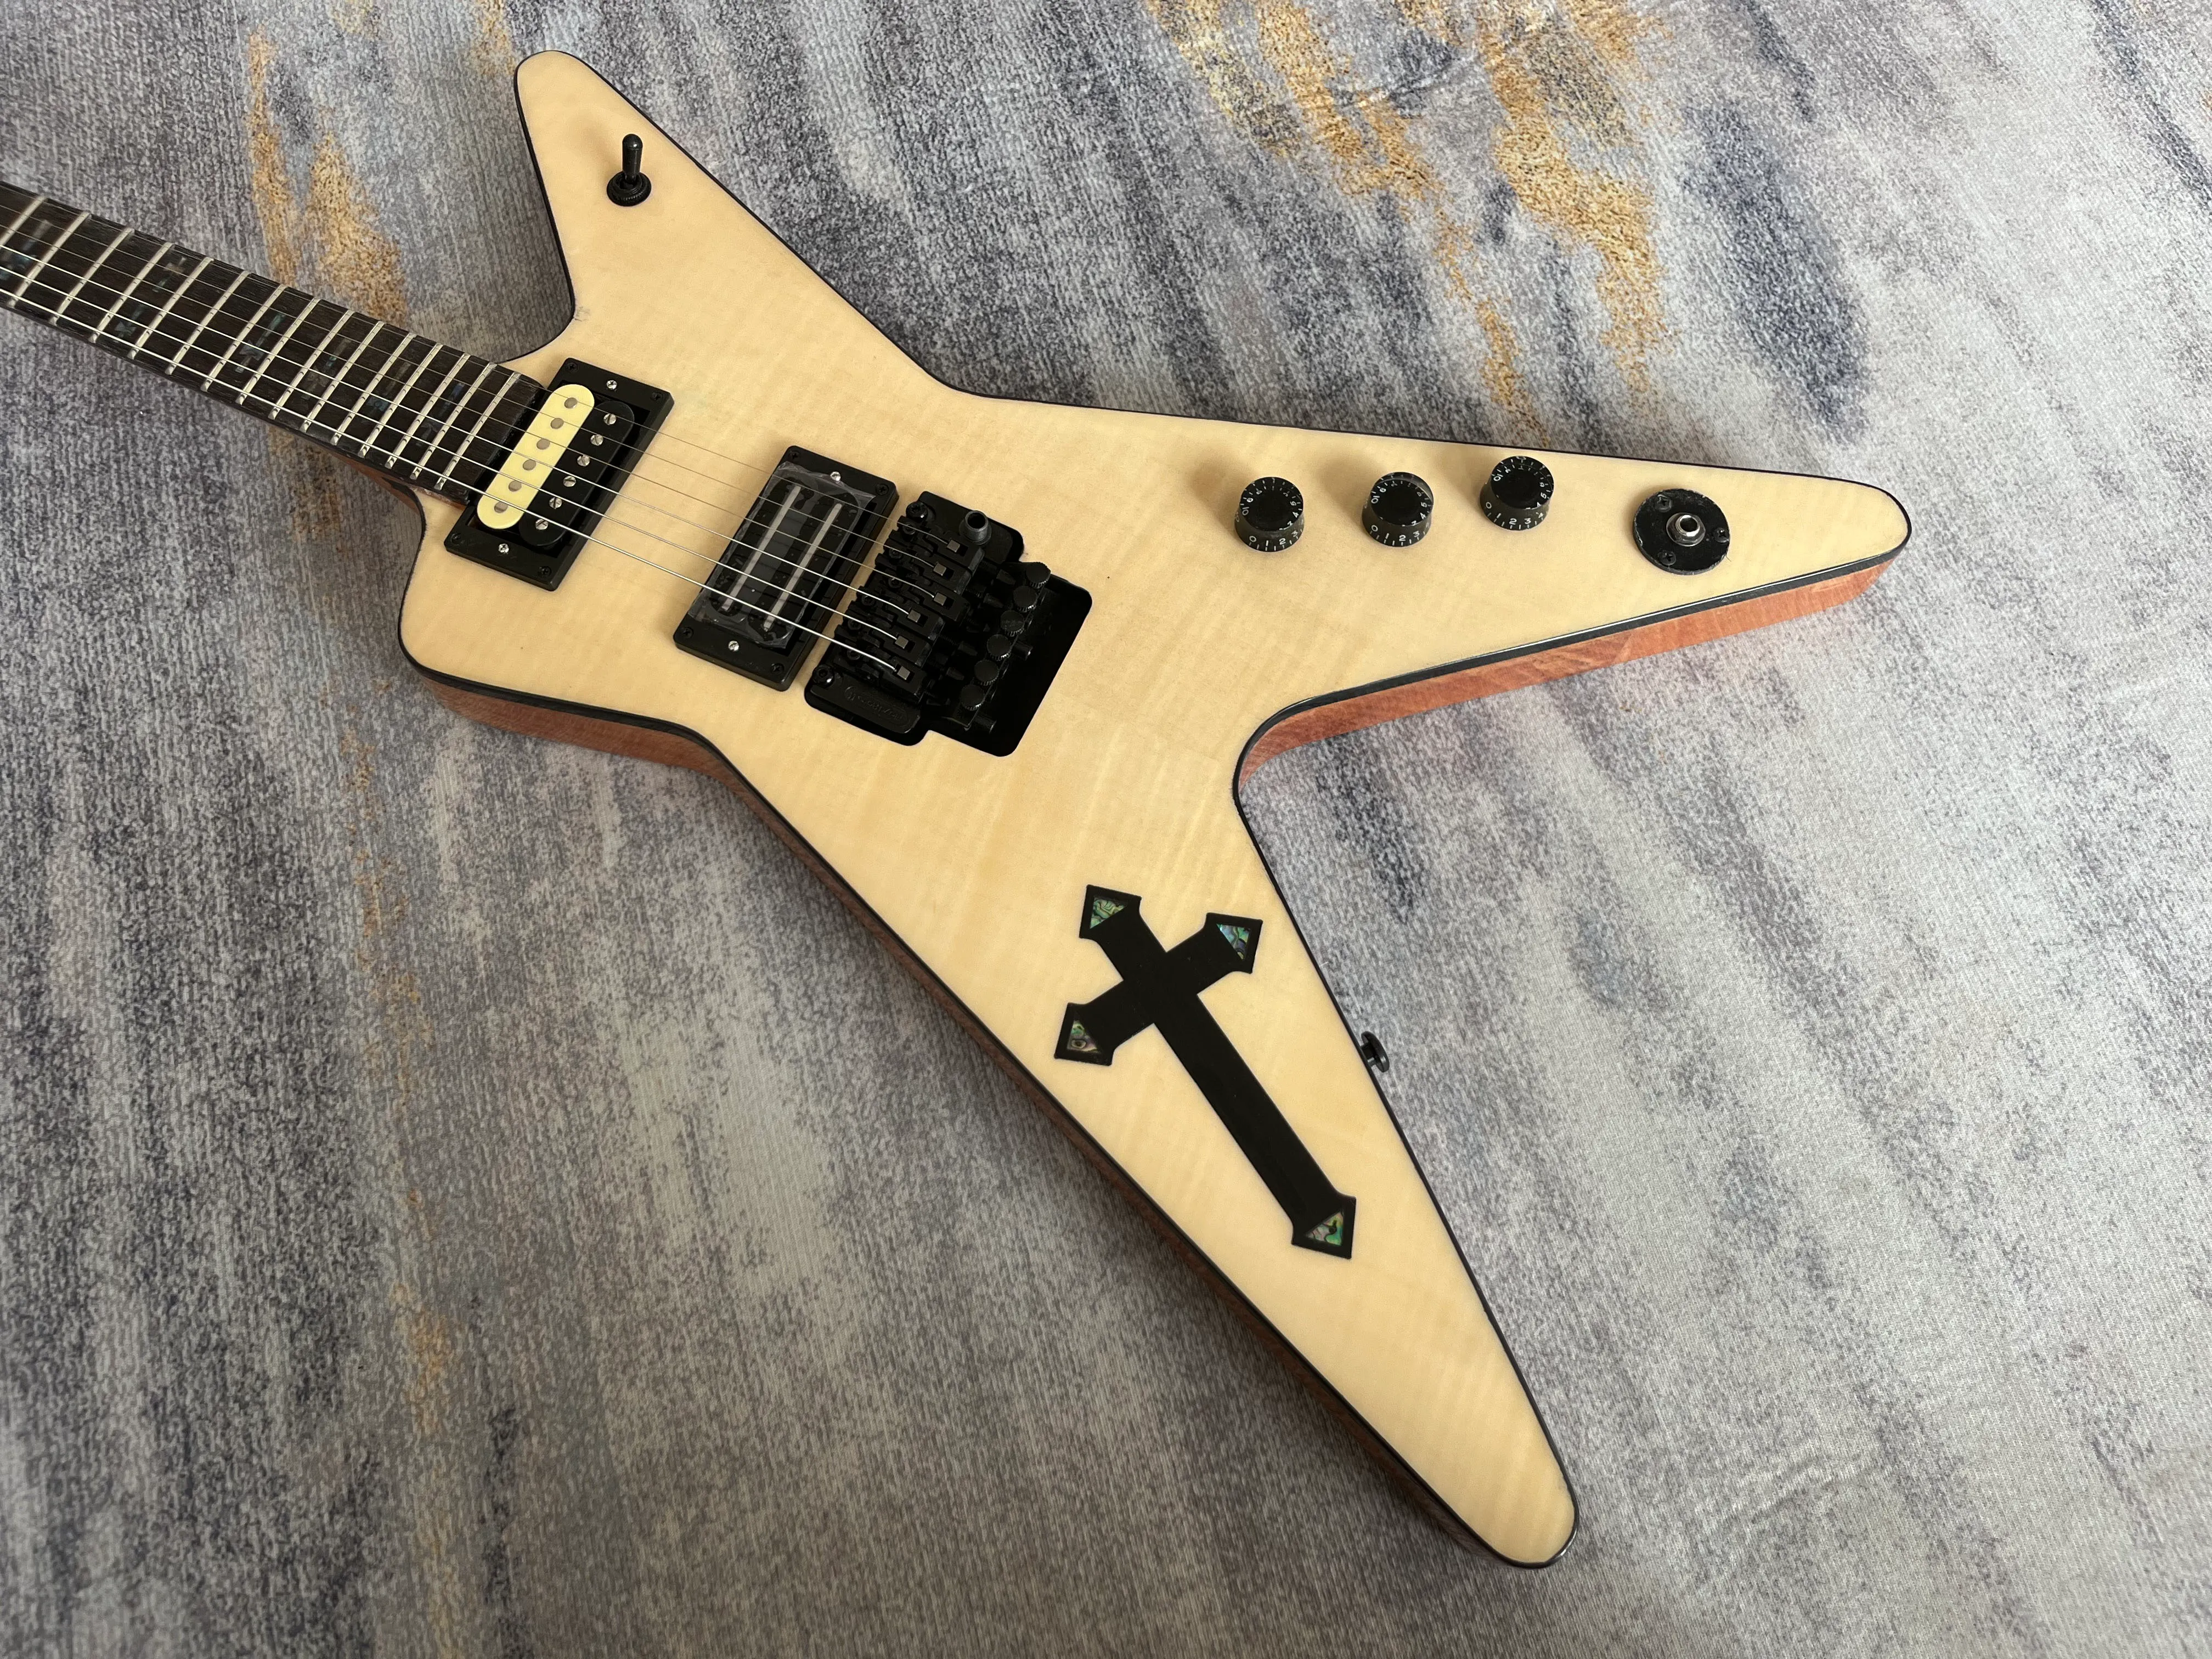 Çince elektrikli gitar natrual renk alev akçaağaç üst siyah donanım 6strings maun gövde ve boyun